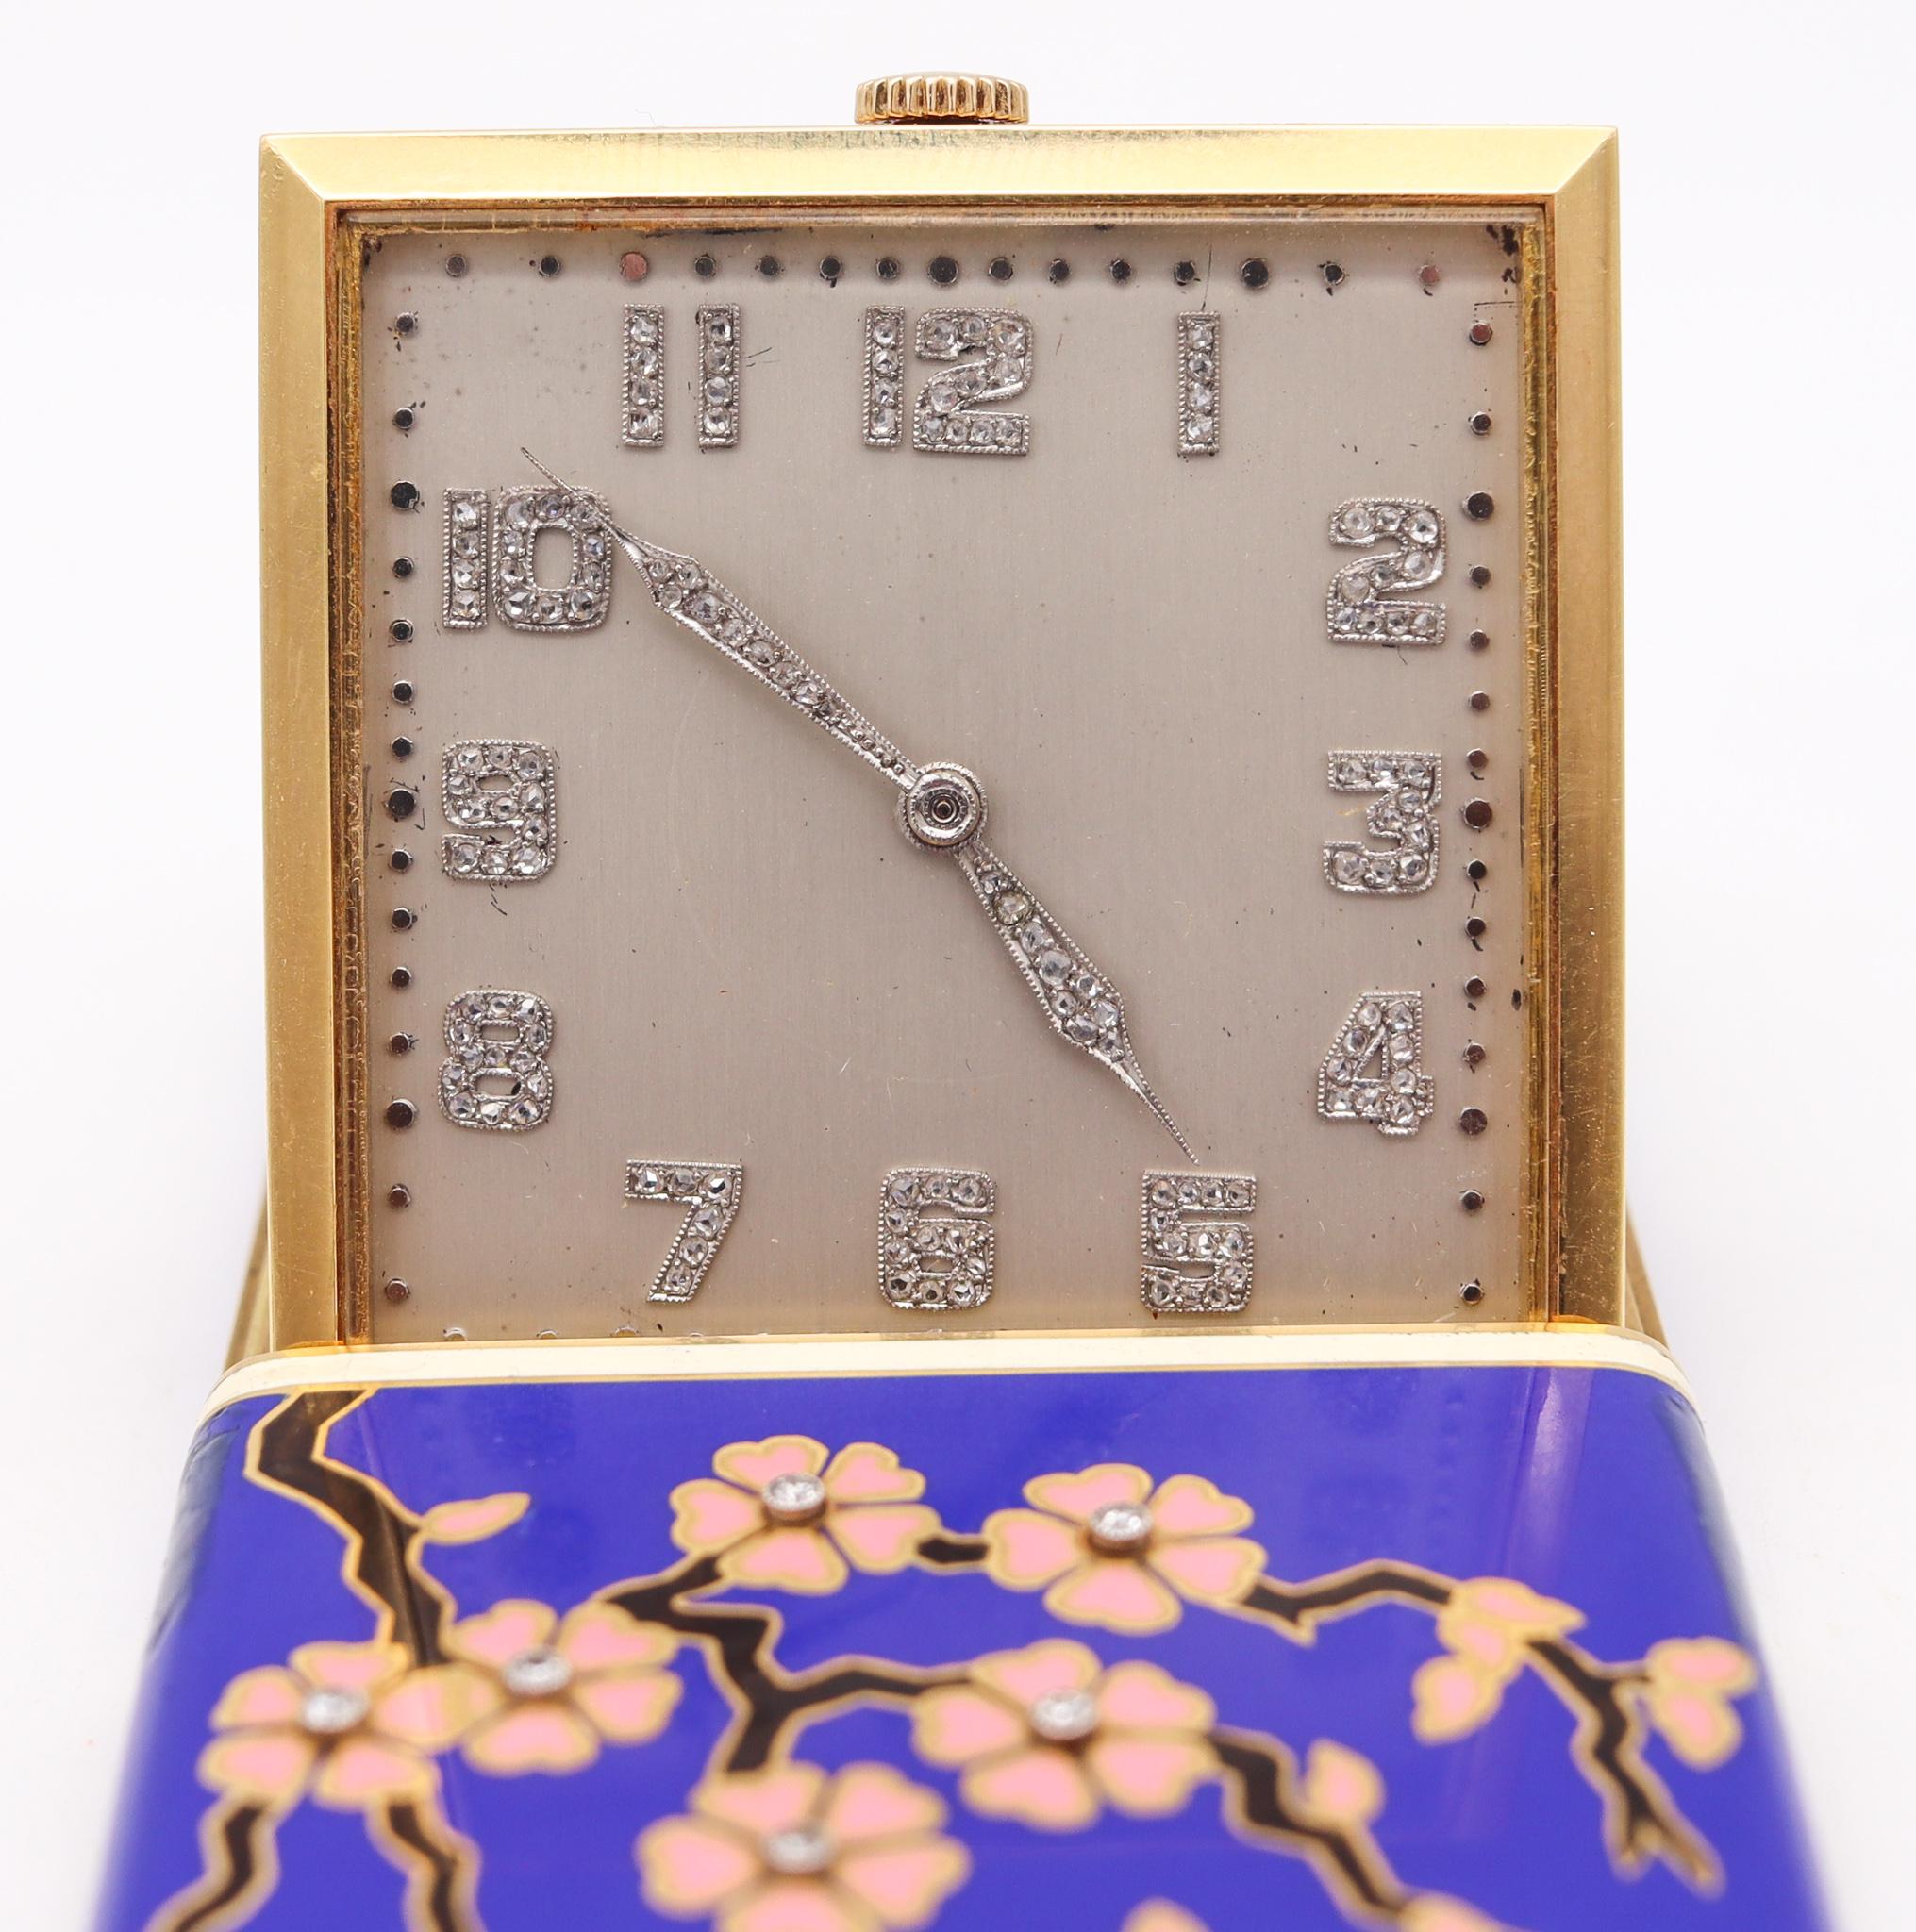 Eine Reiseuhr, entworfen von Cress Arrow Co.

Eine unglaubliche Reiseschreibtischuhr, die 1925 in Amerika während der Art-Deco-Periode von dem Schmuck- und Luxusuhrenhersteller Cress Arrow Co. hergestellt wurde. Dieses fabelhafte, extravagante Stück